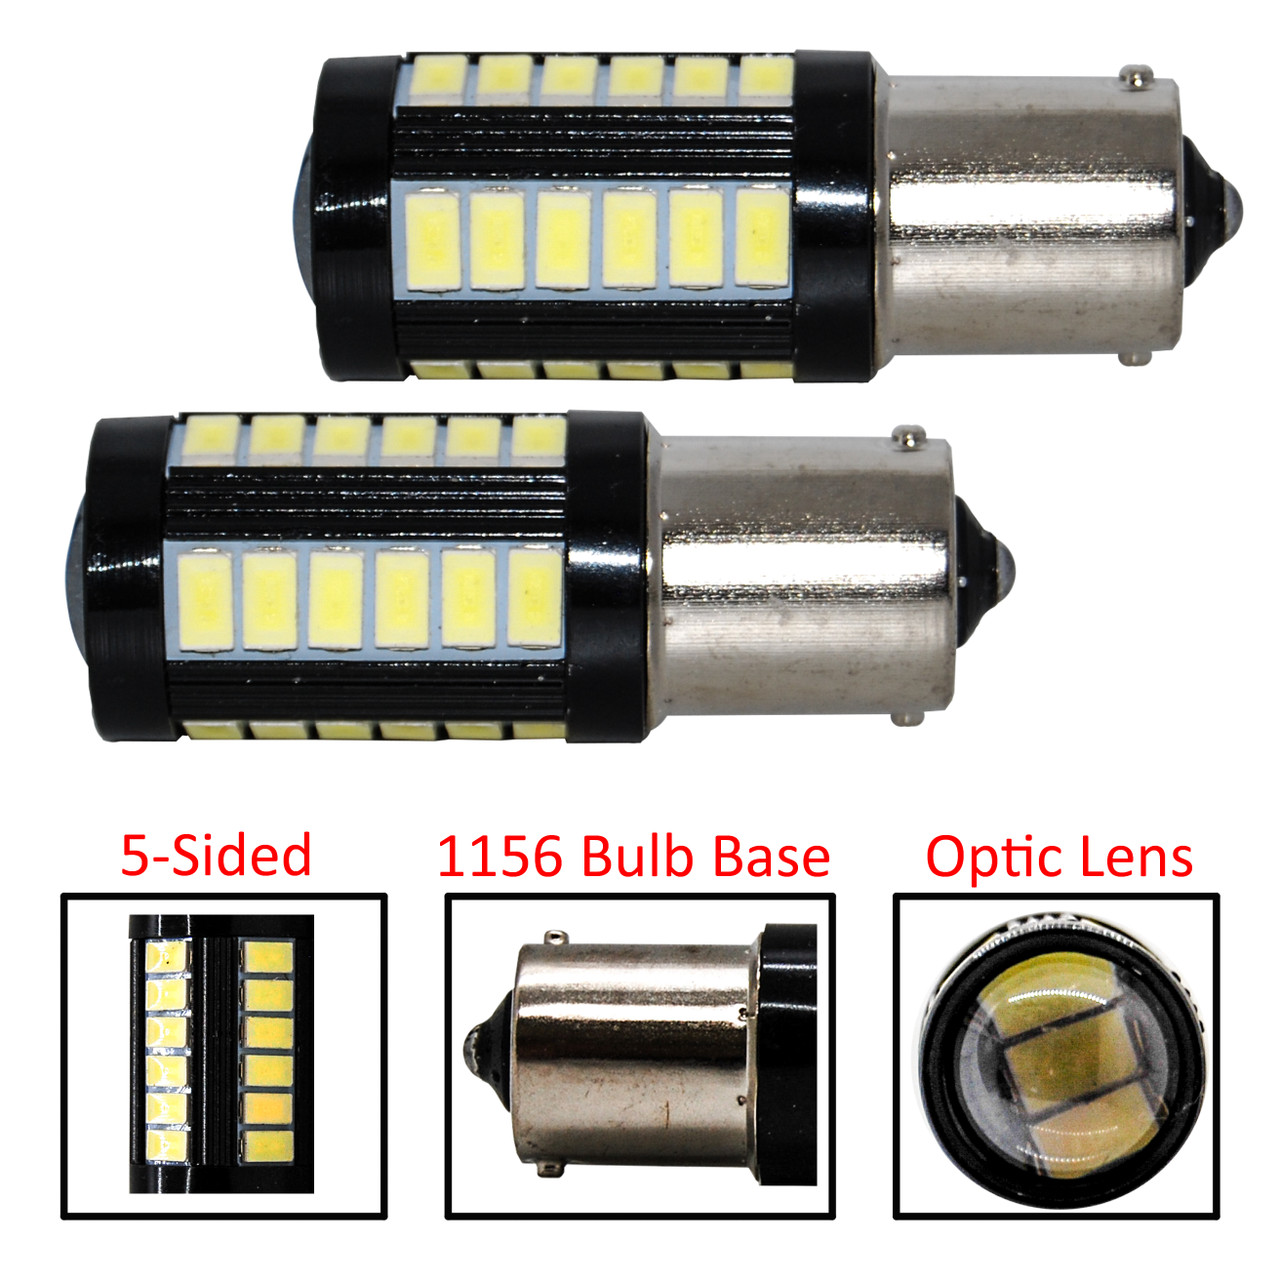 Set of 2 White LED 1156 Bulb Base 33-SMD Error Free LED Lamp with